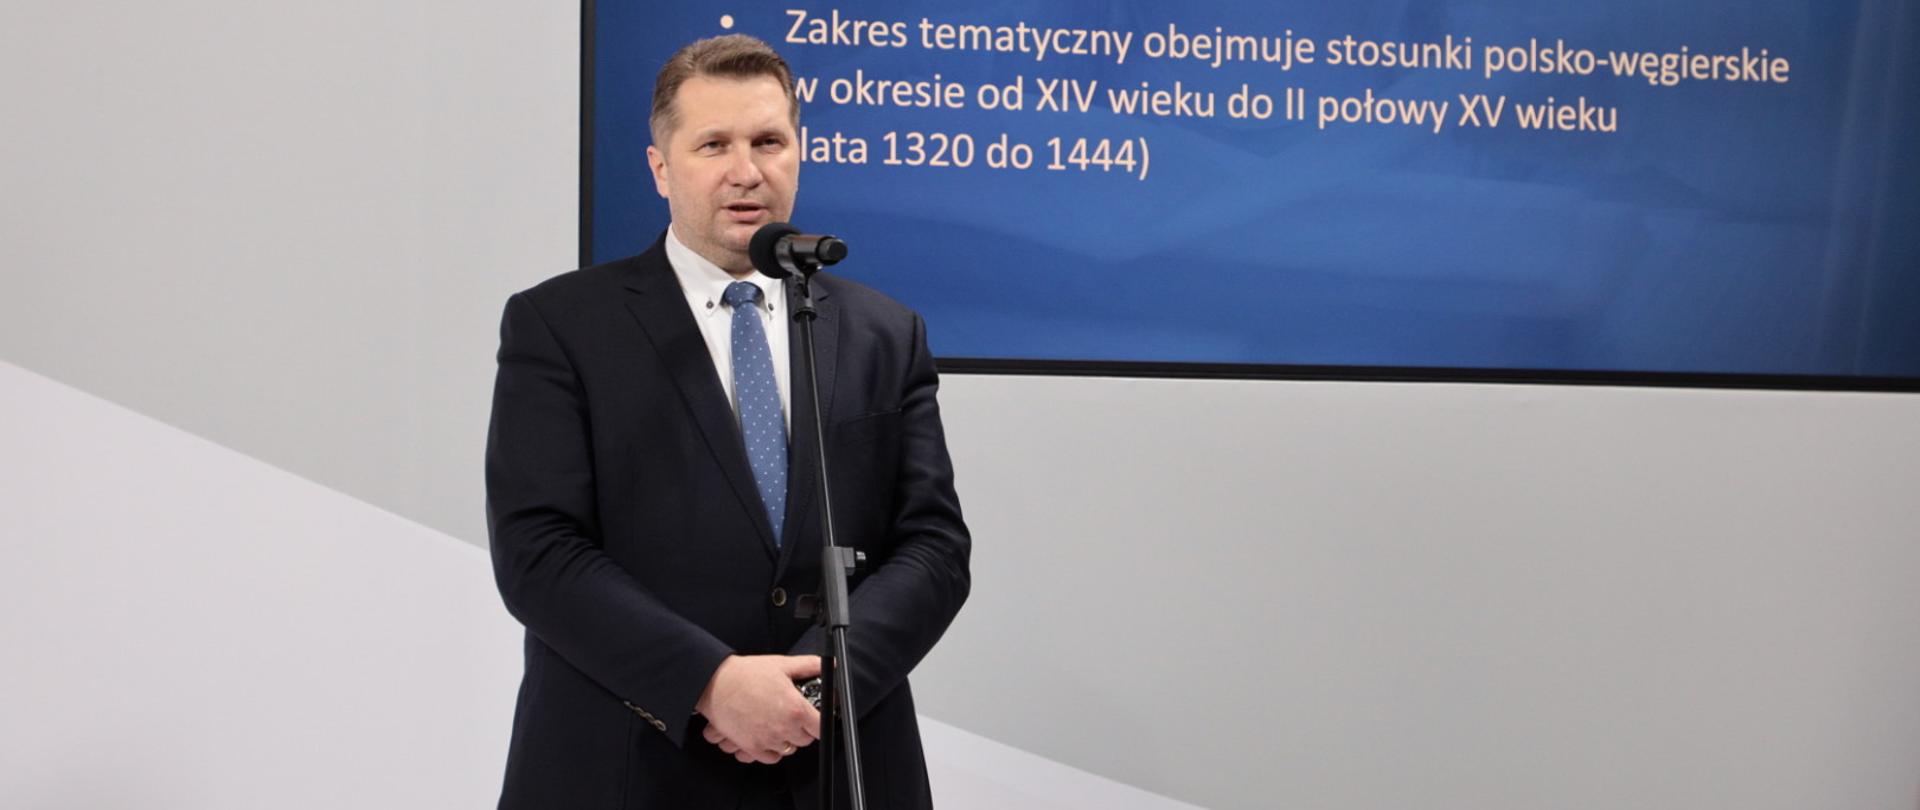 Minister Przemysław Czarnek przemawia do mikrofonu podczas ogłoszenia konkursu historycznego 